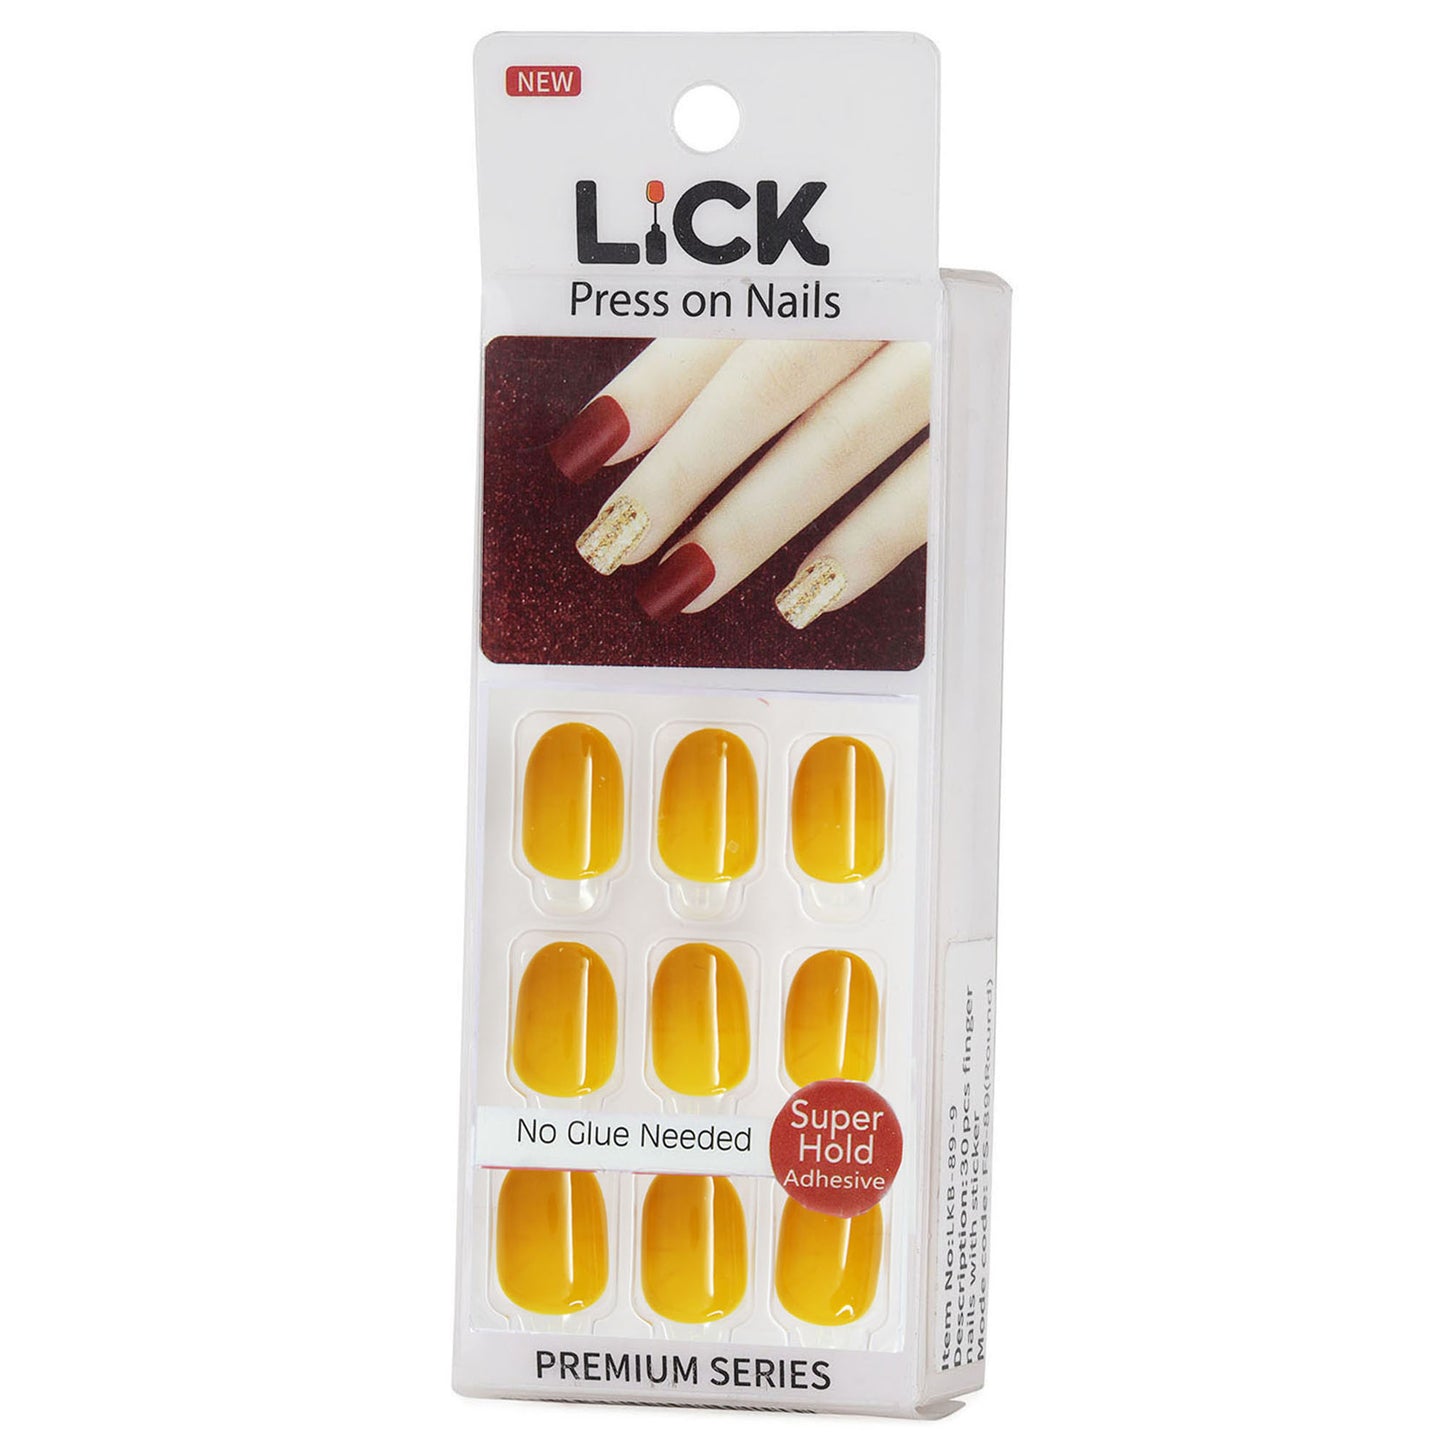 LICK NAILS Mustard Yellow Shade Press on Nails